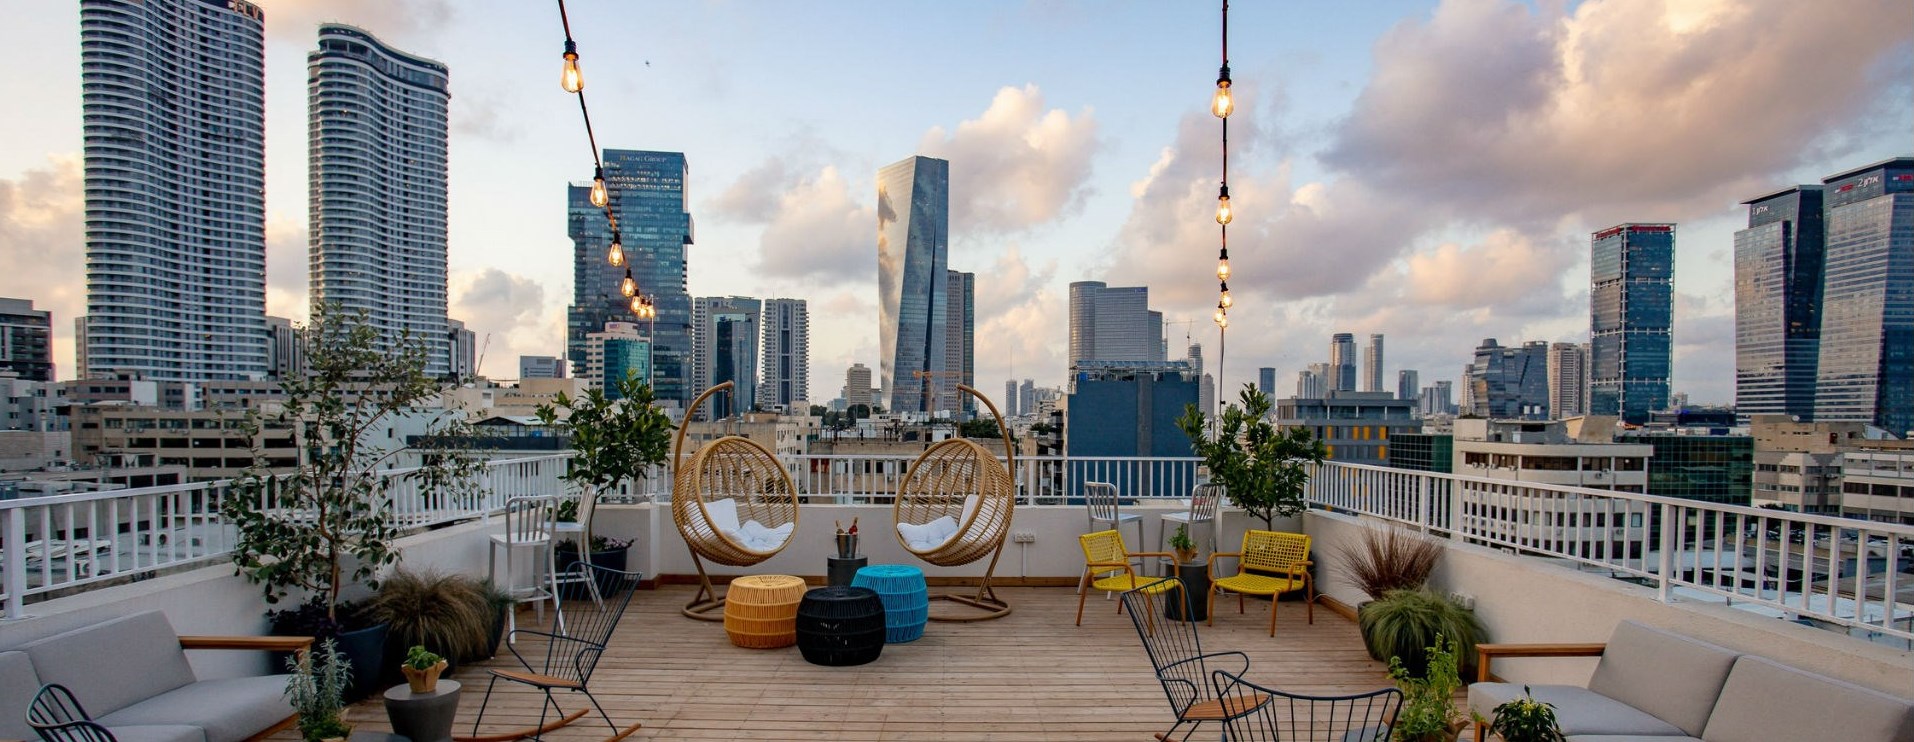 Best Hostels in Tel Aviv | Meet The Gia Hostel 